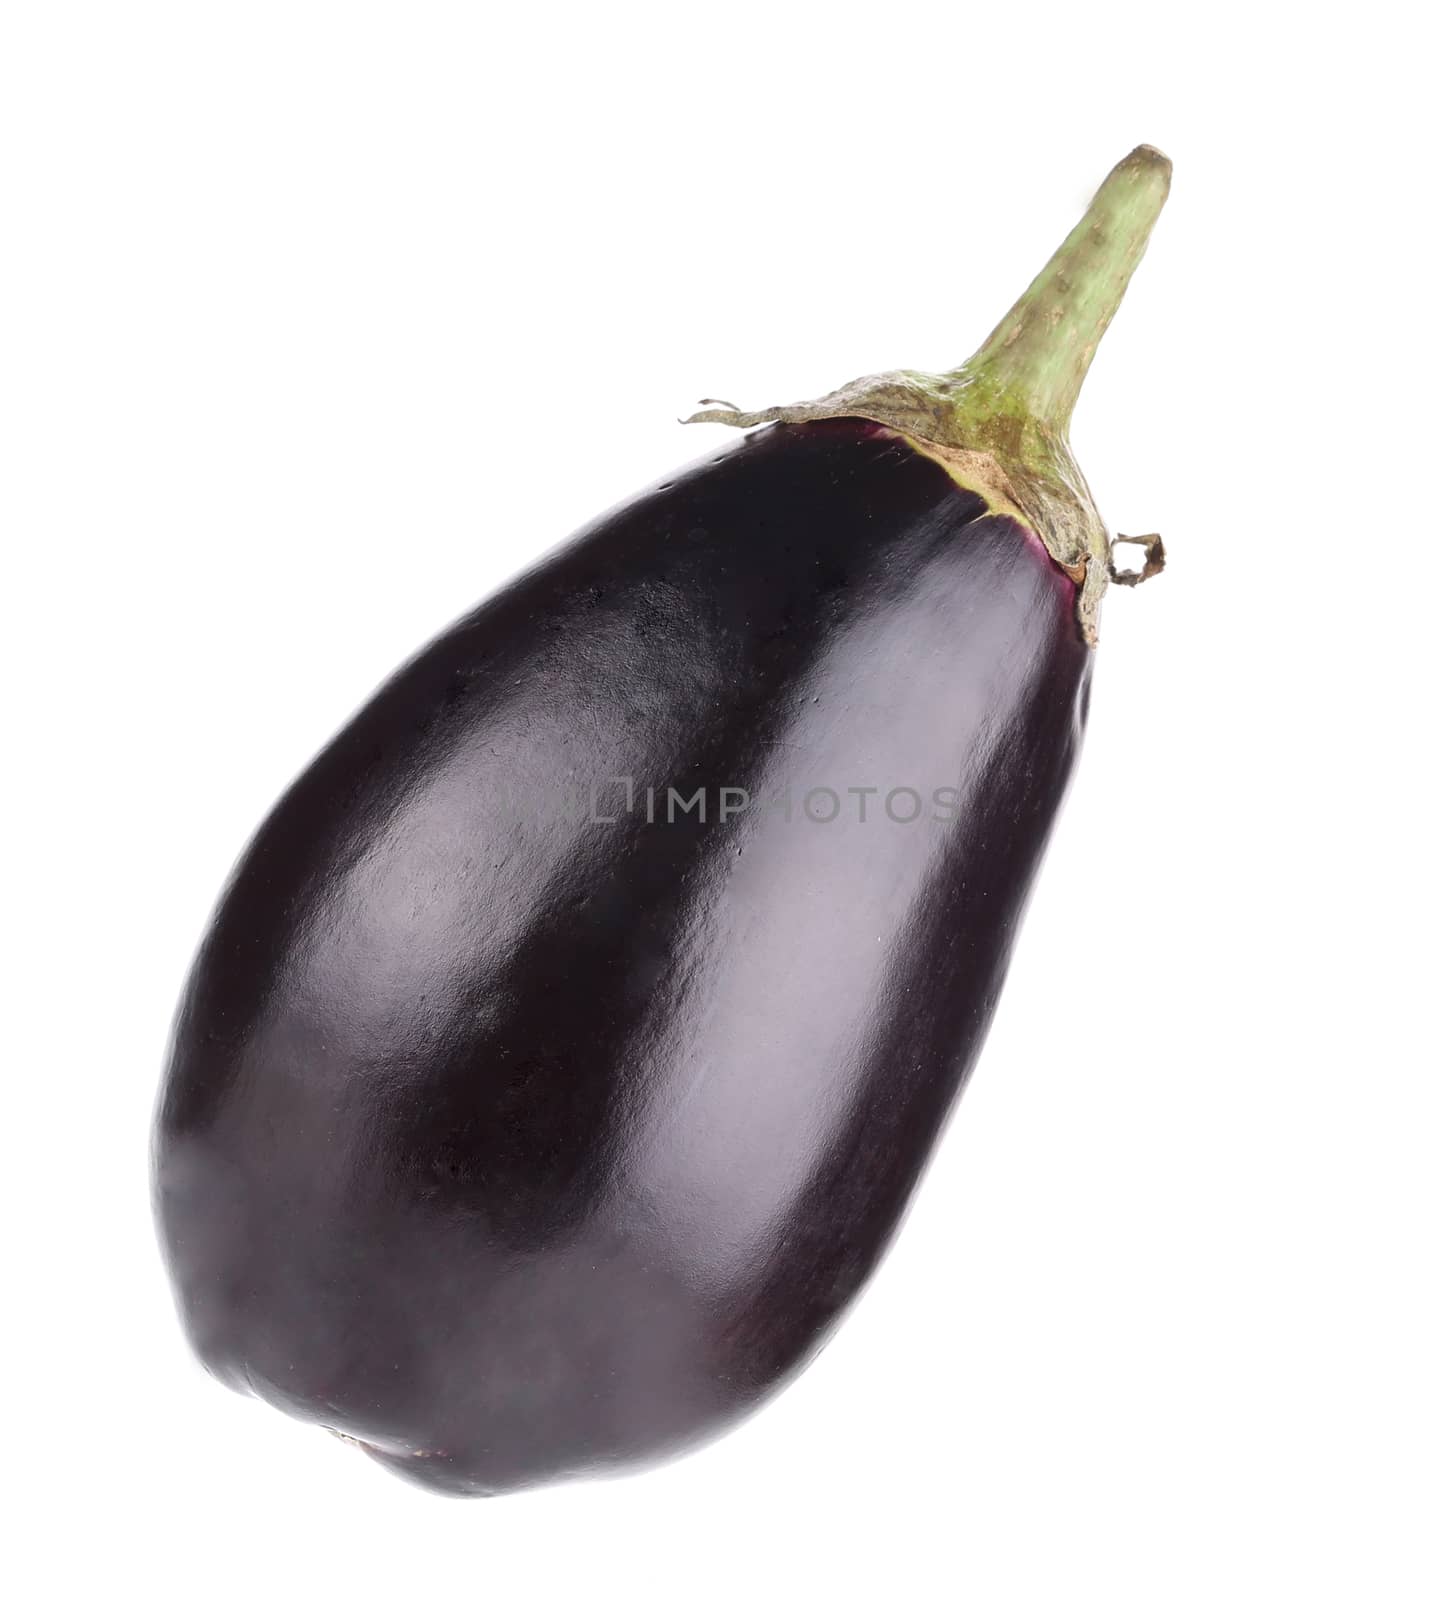 Large single eggplant. by indigolotos